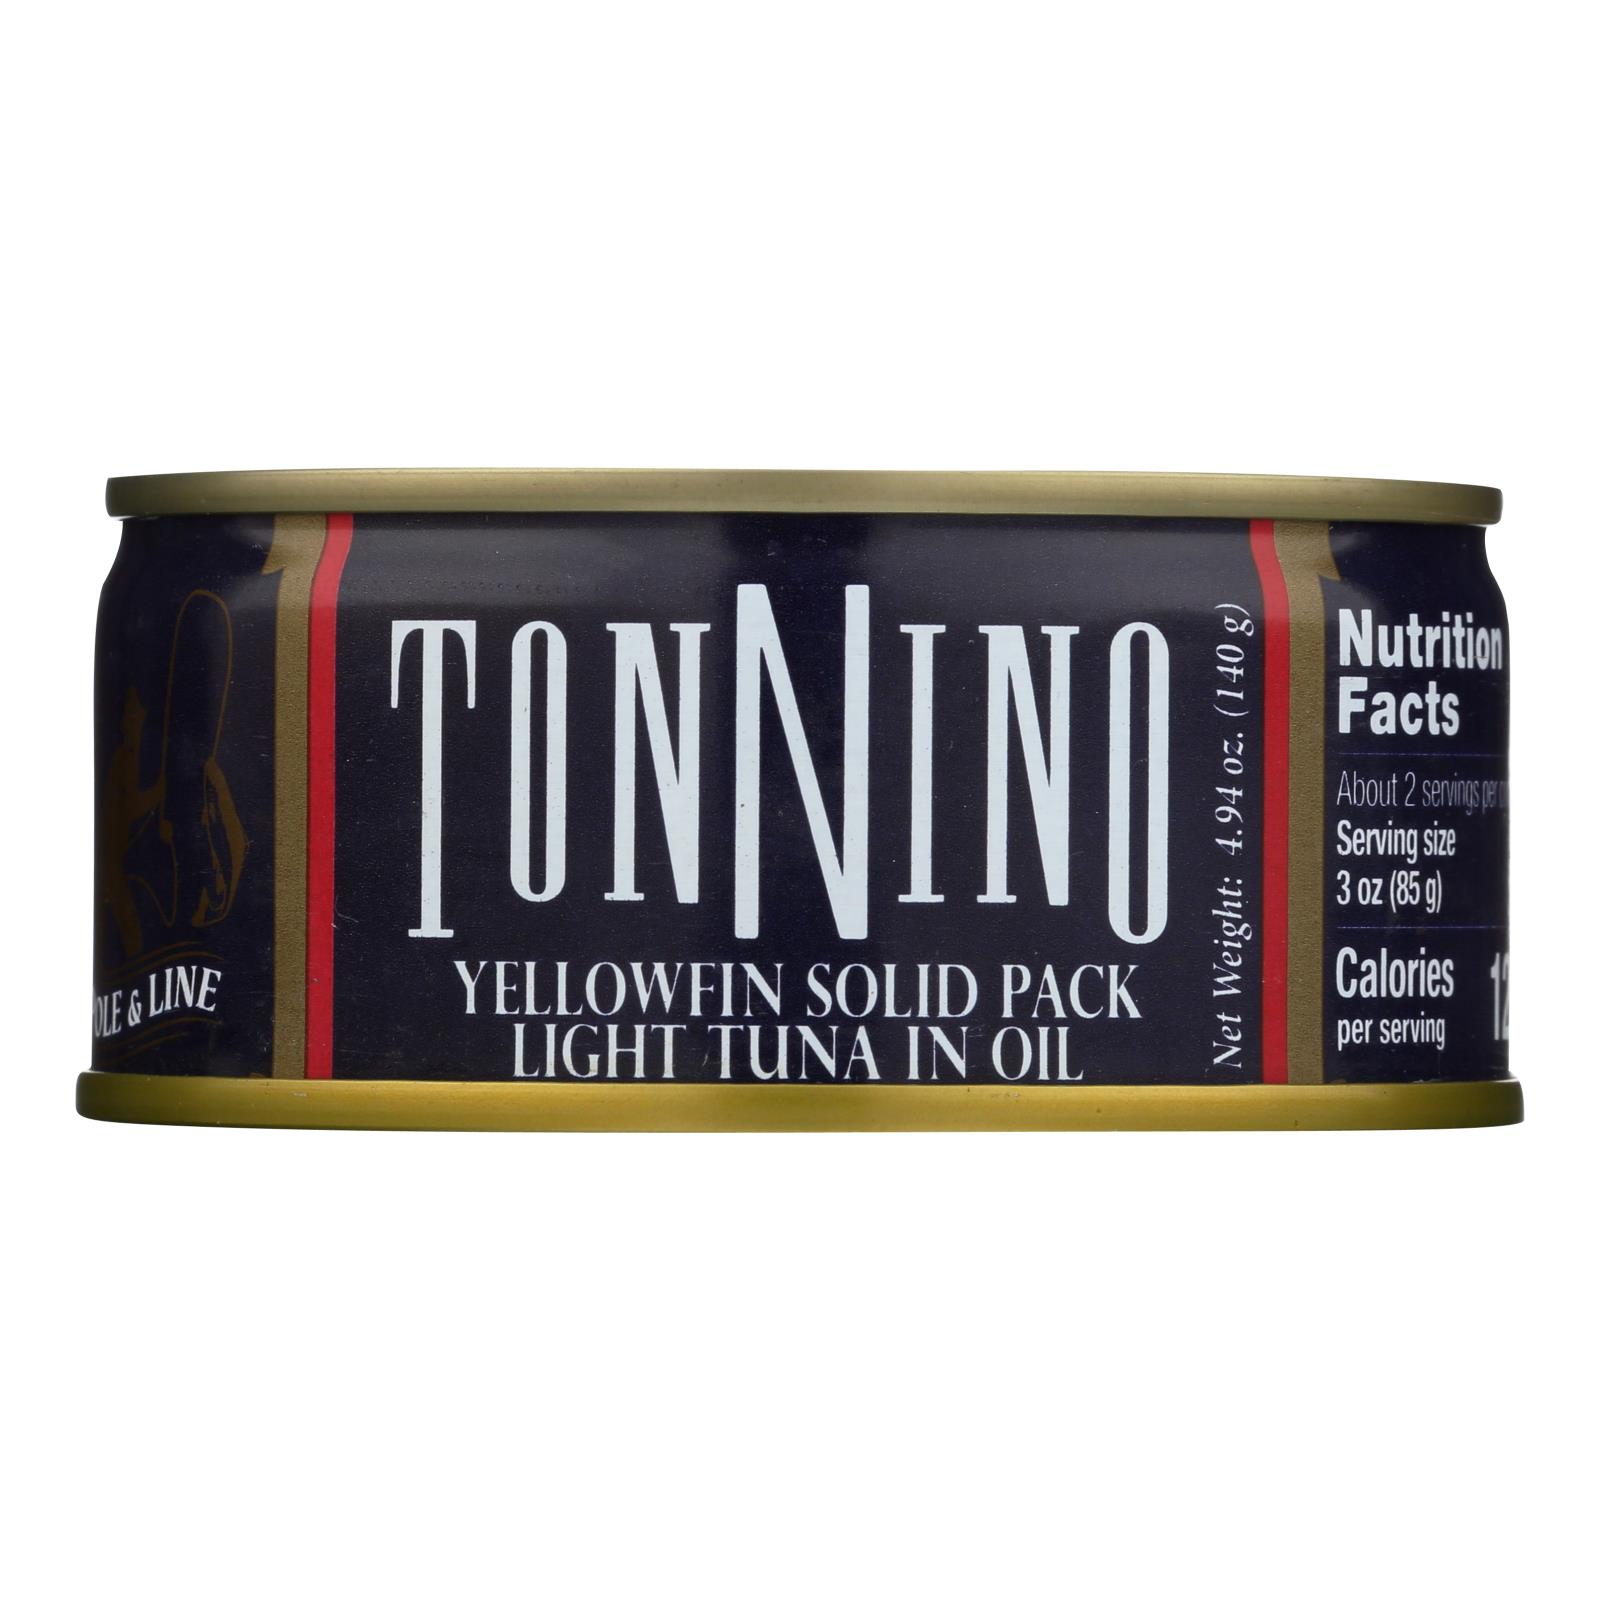 Tonnino Tuna - Light Tuna In Oil - 12개 묶음상품 - 4.94 OZ